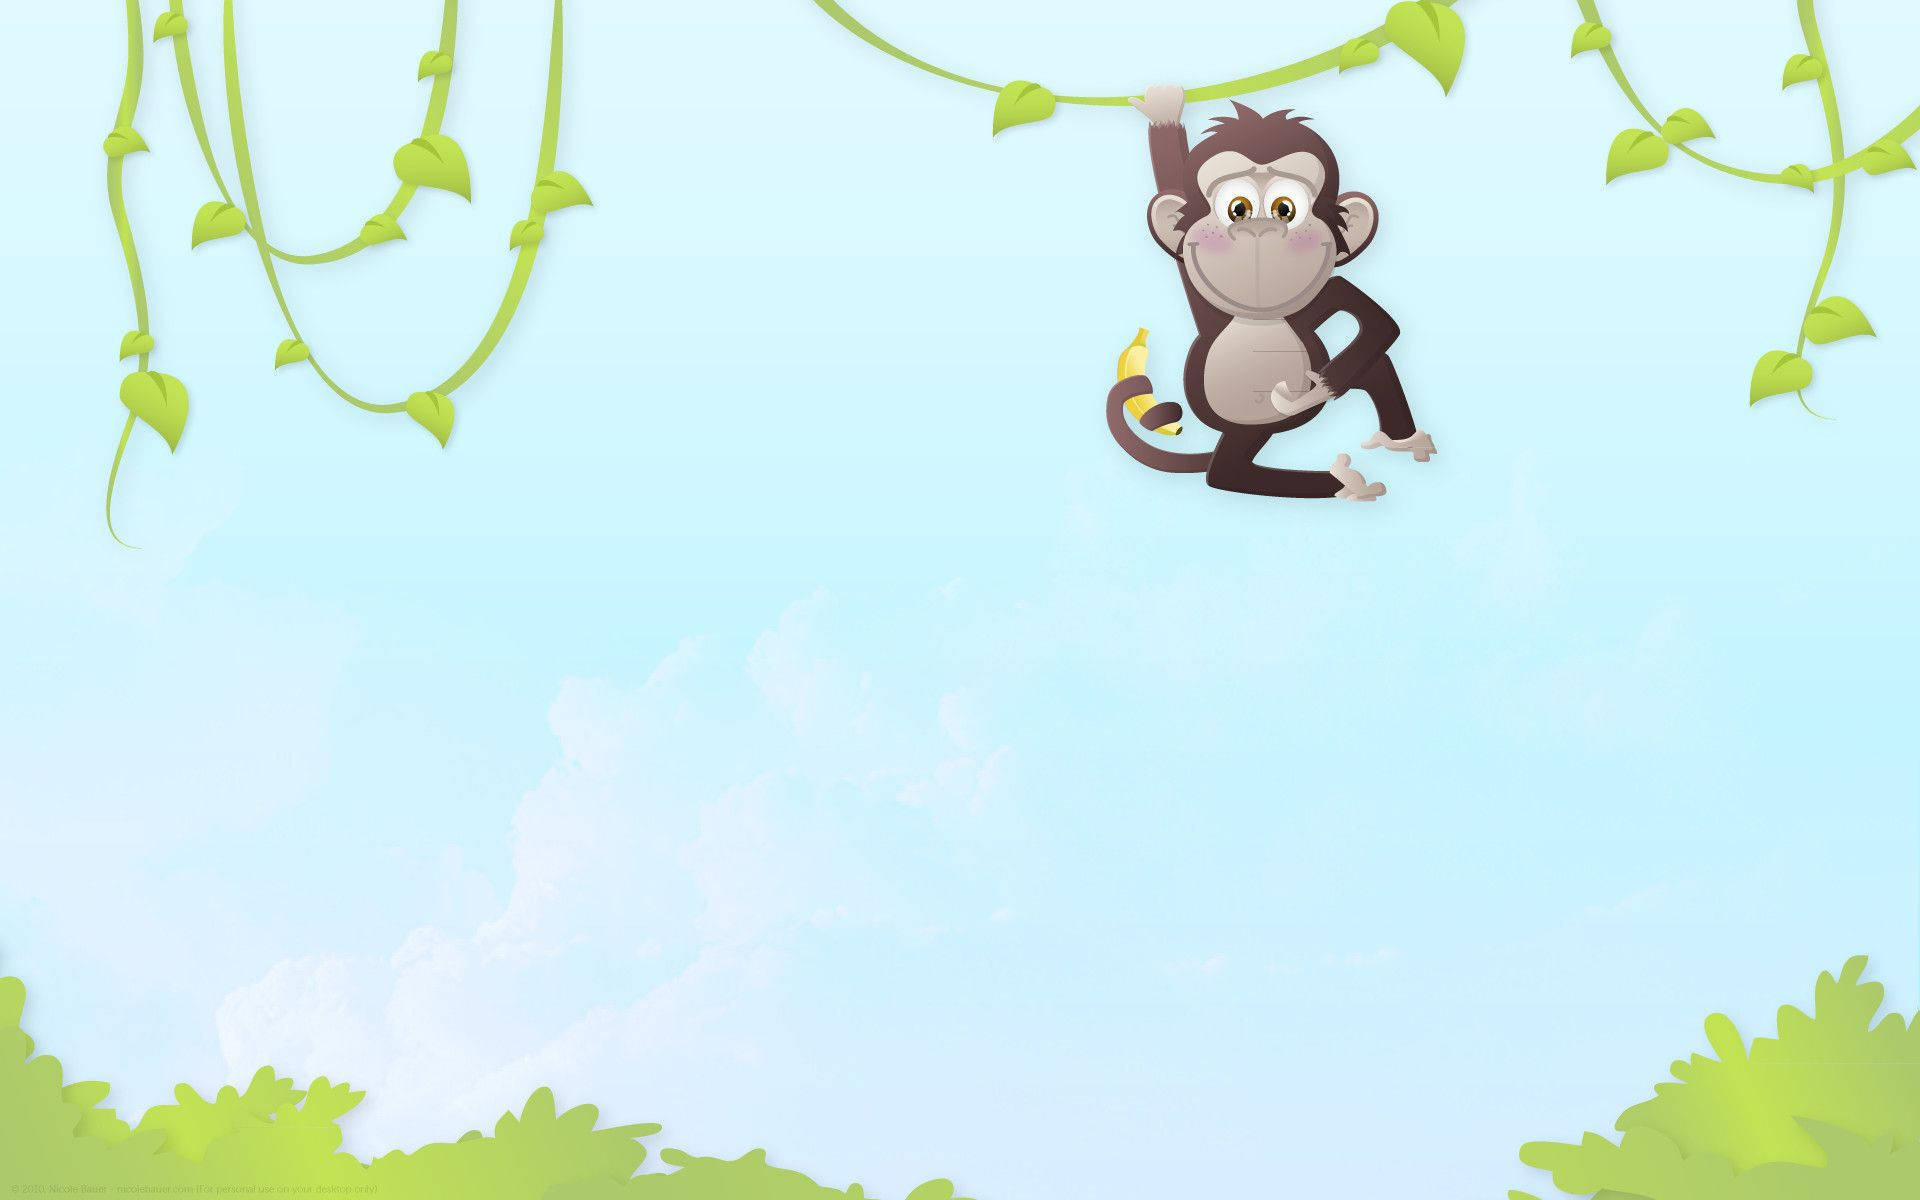 Free Cute Monkey Wallpaper Downloads, [100+] Cute Monkey Wallpapers for  FREE 